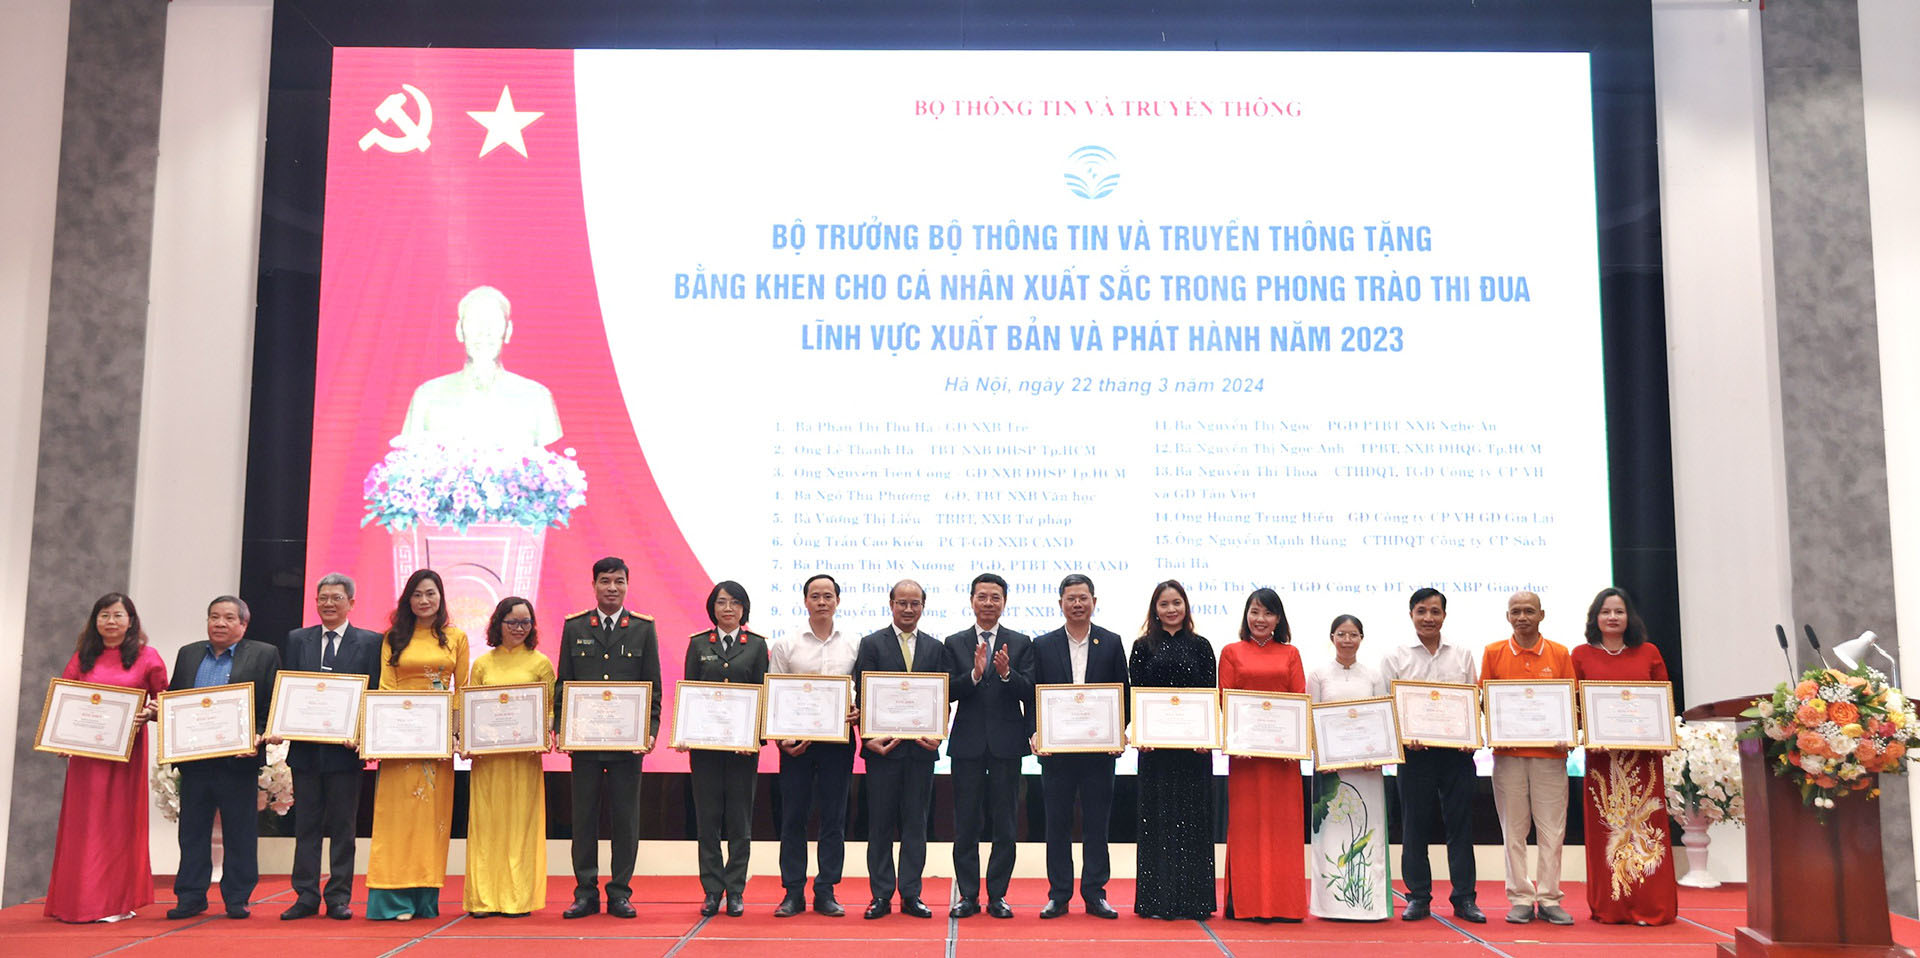 Bộ trưởng Nguyễn Mạnh Hùng tặng bằng khen và cờ thi đua cho các cá nhân và đơn vị ngành xuất bản.